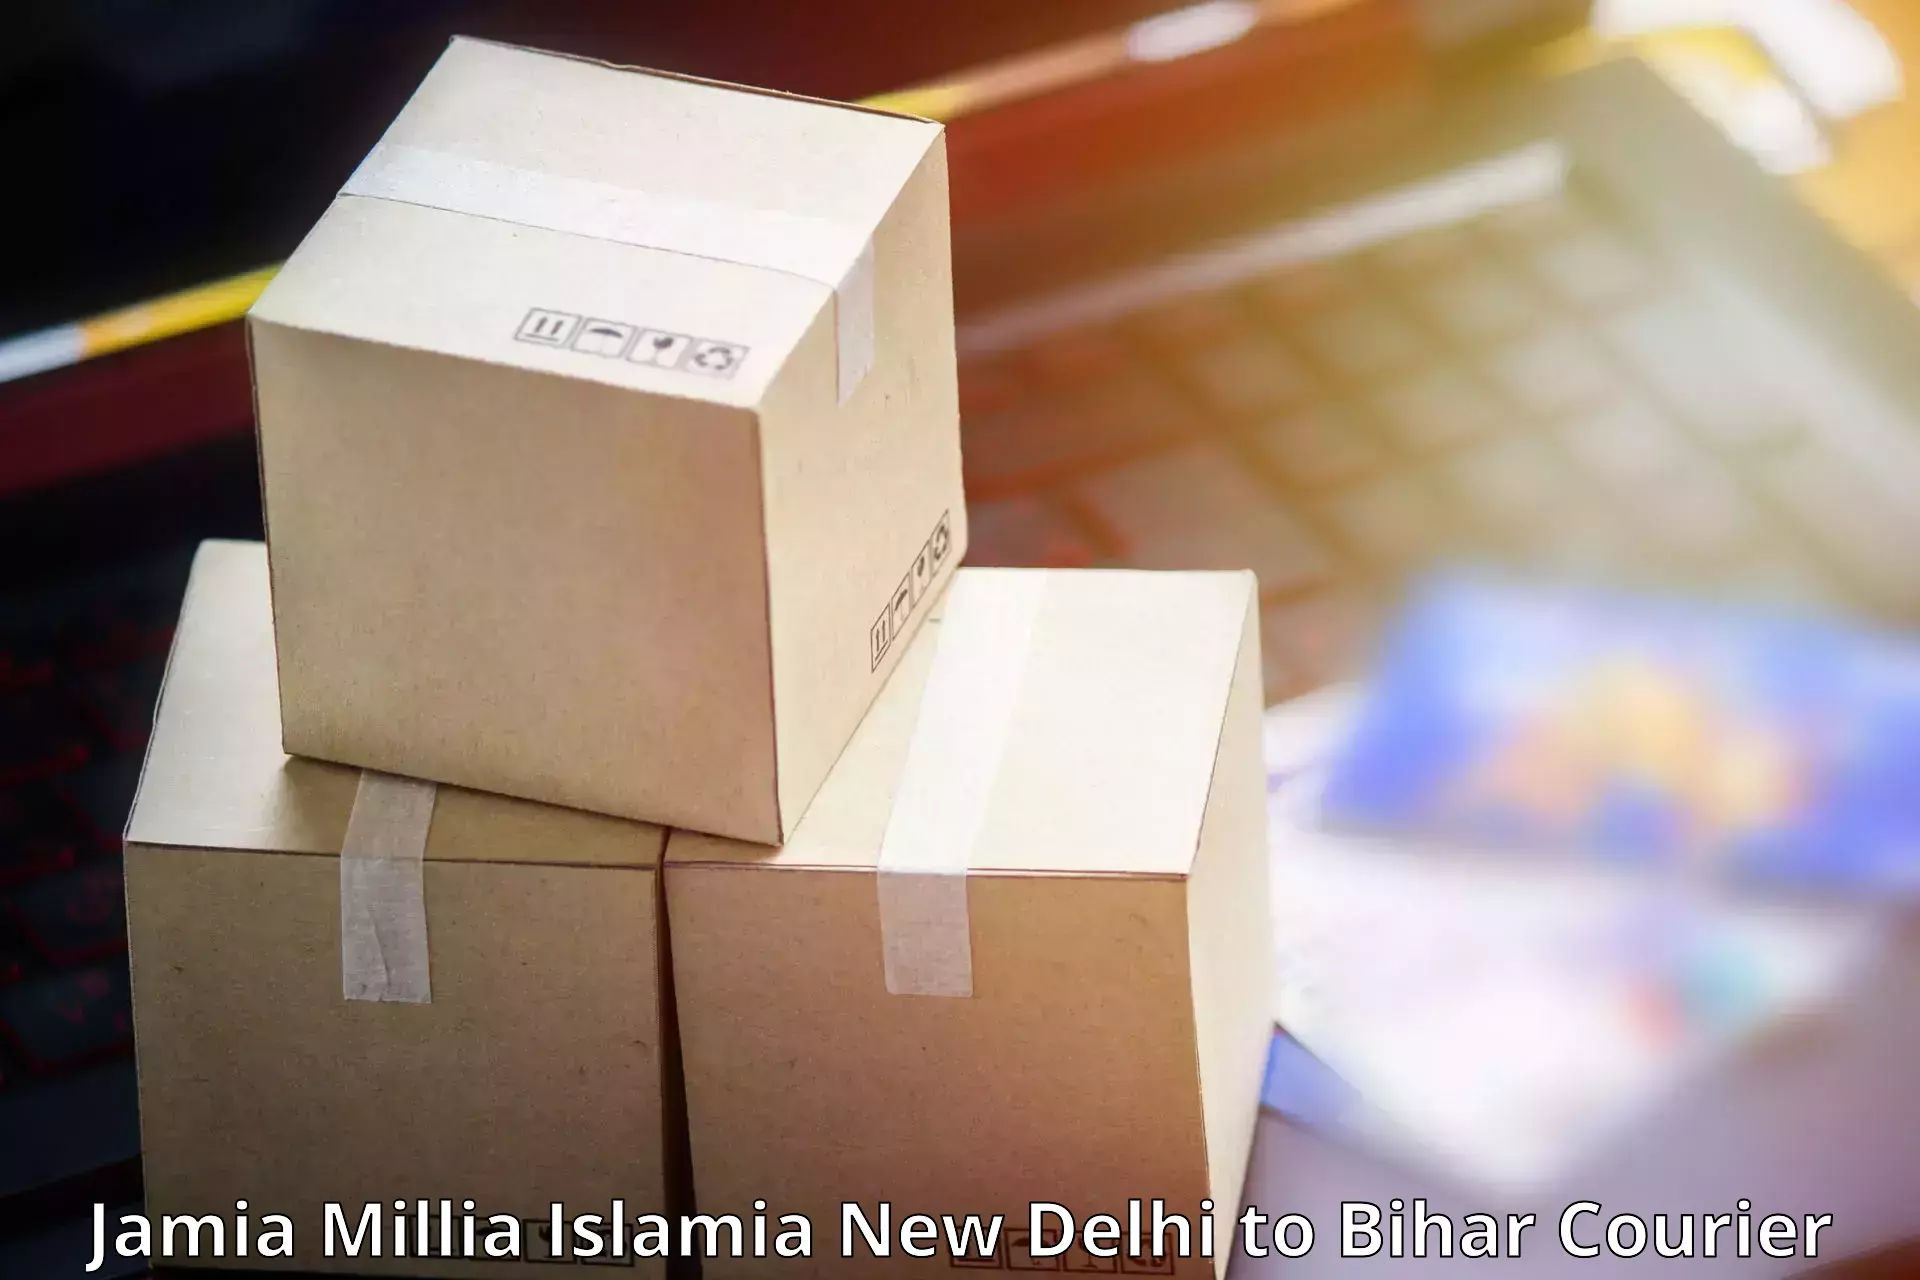 Reliable delivery network Jamia Millia Islamia New Delhi to Phulparas